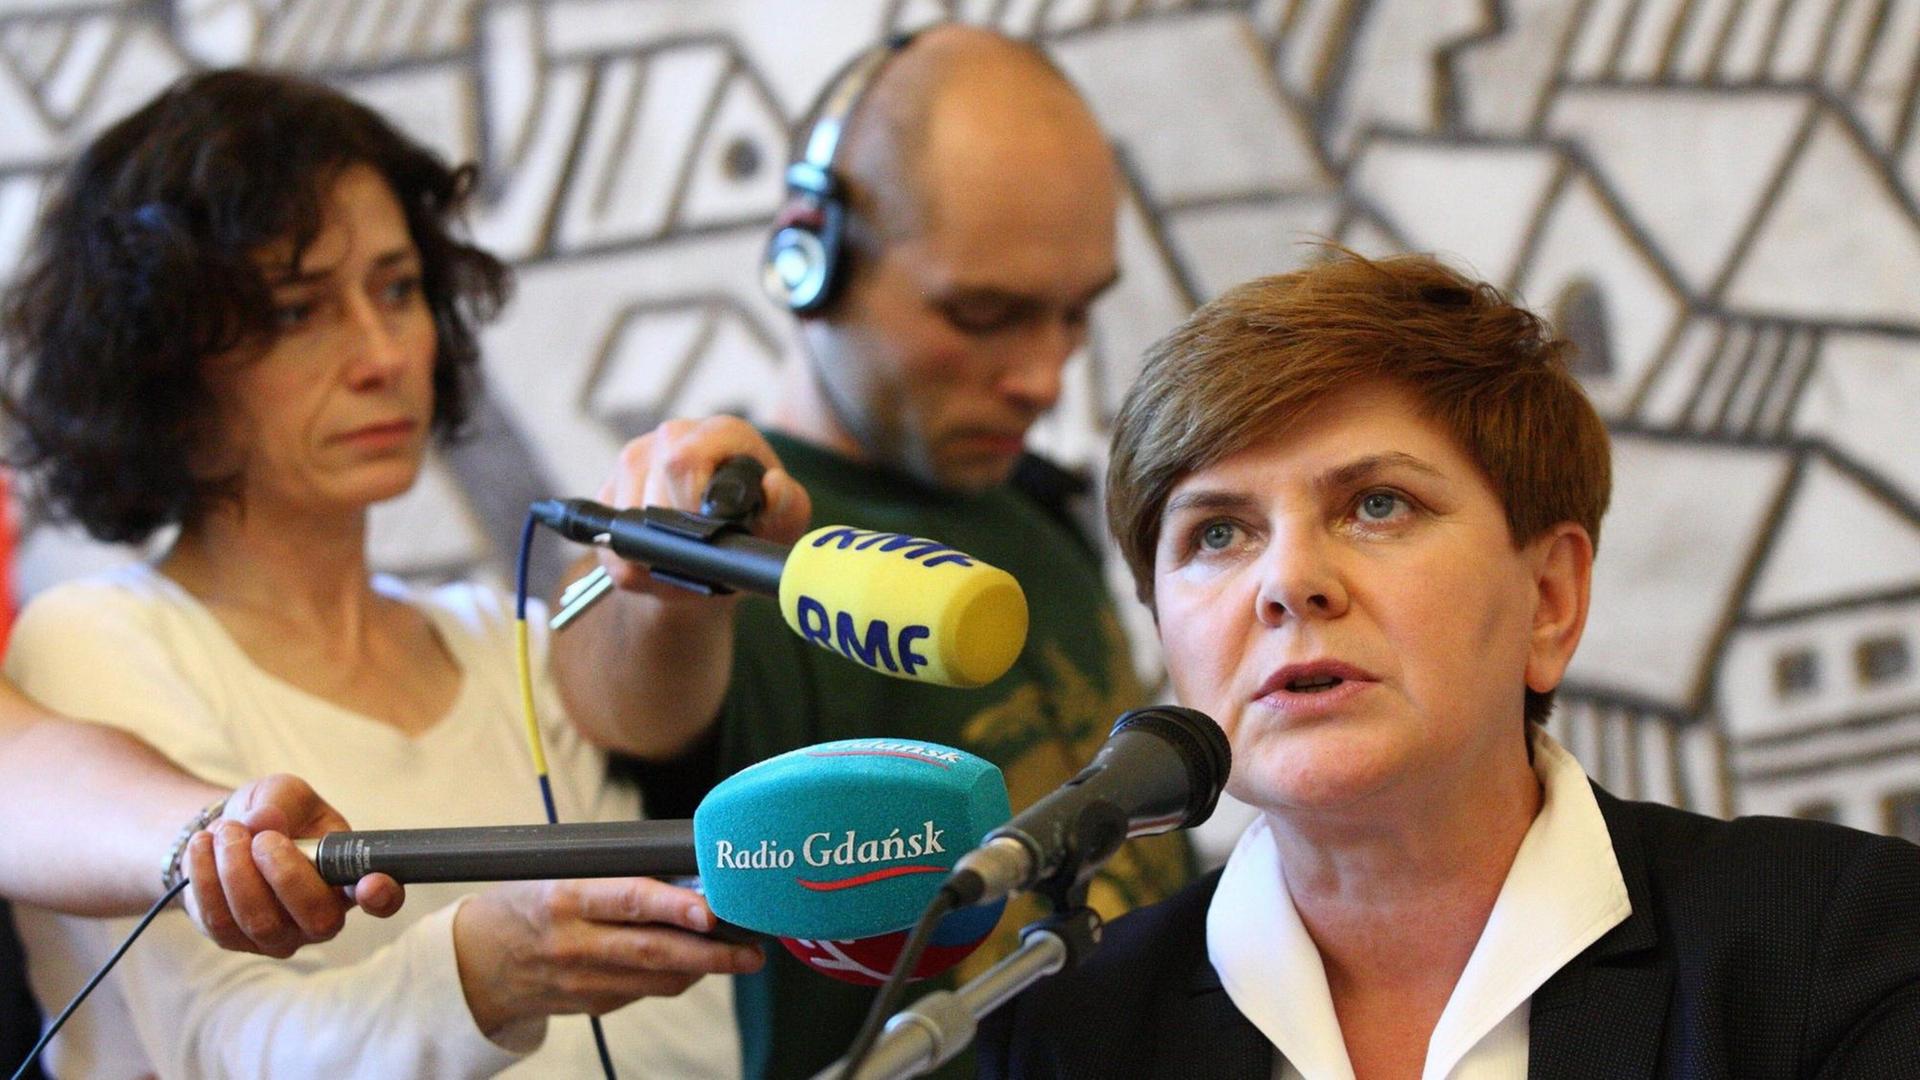 Beata Szydlo ist Kandidatin der Partei Recht und Rechtigkeit (PiS) in Polen für das Amt der Ministerpräsidentin.